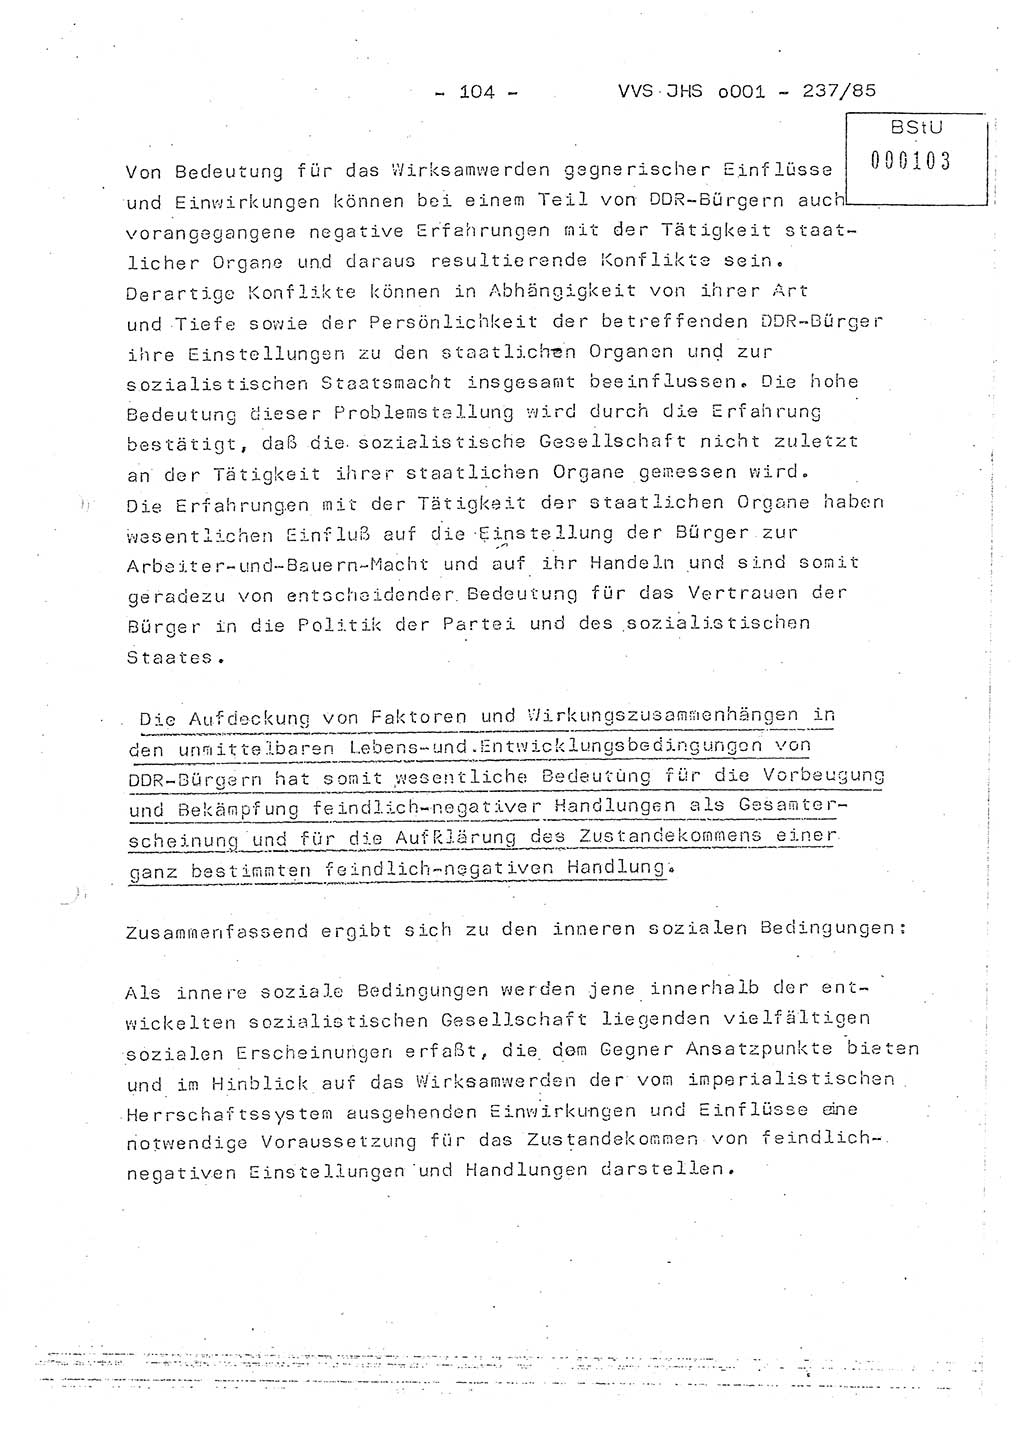 Dissertation Oberstleutnant Peter Jakulski (JHS), Oberstleutnat Christian Rudolph (HA Ⅸ), Major Horst Böttger (ZMD), Major Wolfgang Grüneberg (JHS), Major Albert Meutsch (JHS), Ministerium für Staatssicherheit (MfS) [Deutsche Demokratische Republik (DDR)], Juristische Hochschule (JHS), Vertrauliche Verschlußsache (VVS) o001-237/85, Potsdam 1985, Seite 104 (Diss. MfS DDR JHS VVS o001-237/85 1985, S. 104)